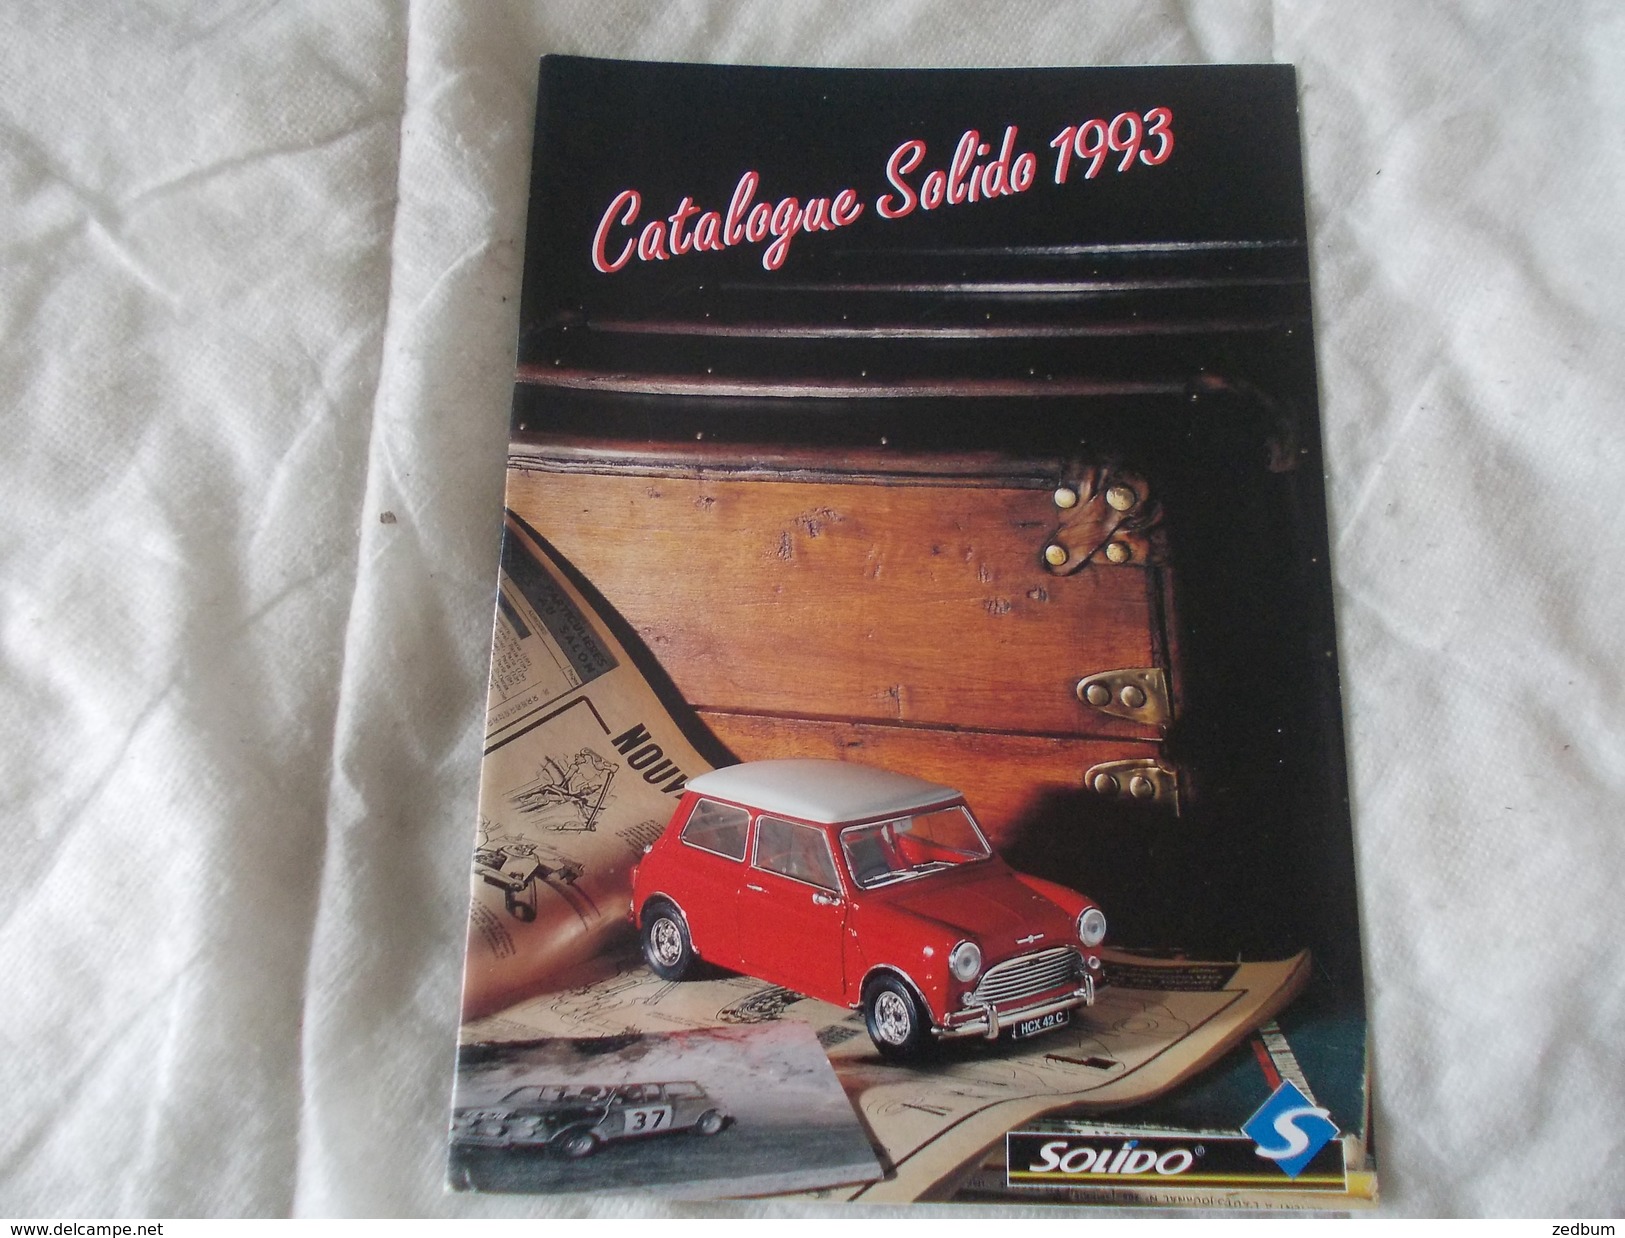 Catalogue Solido 1993 - Modélisme